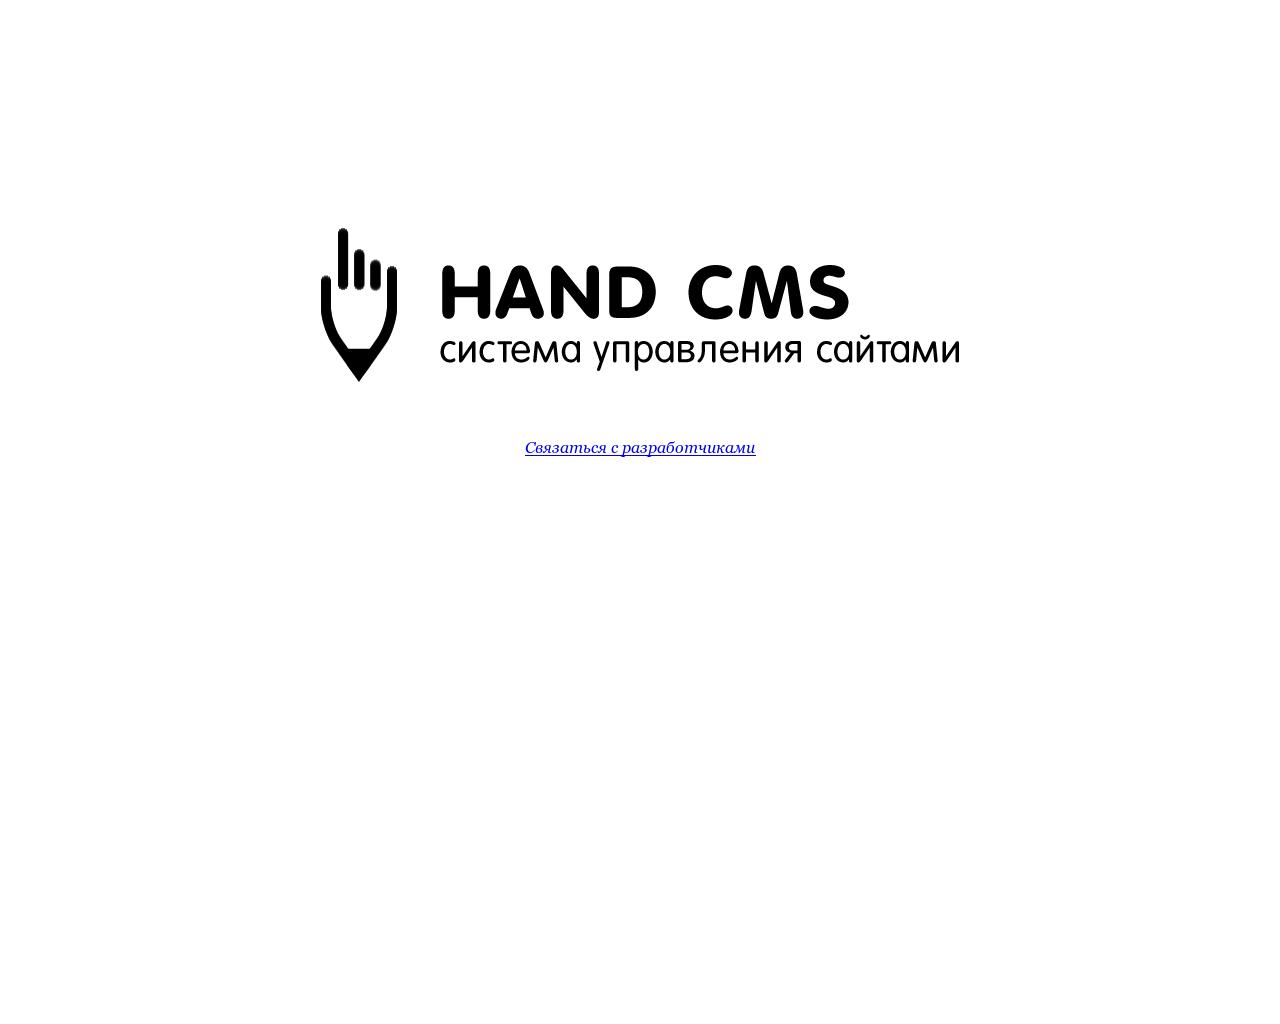 Изображение сайта handcms.ru в разрешении 1280x1024